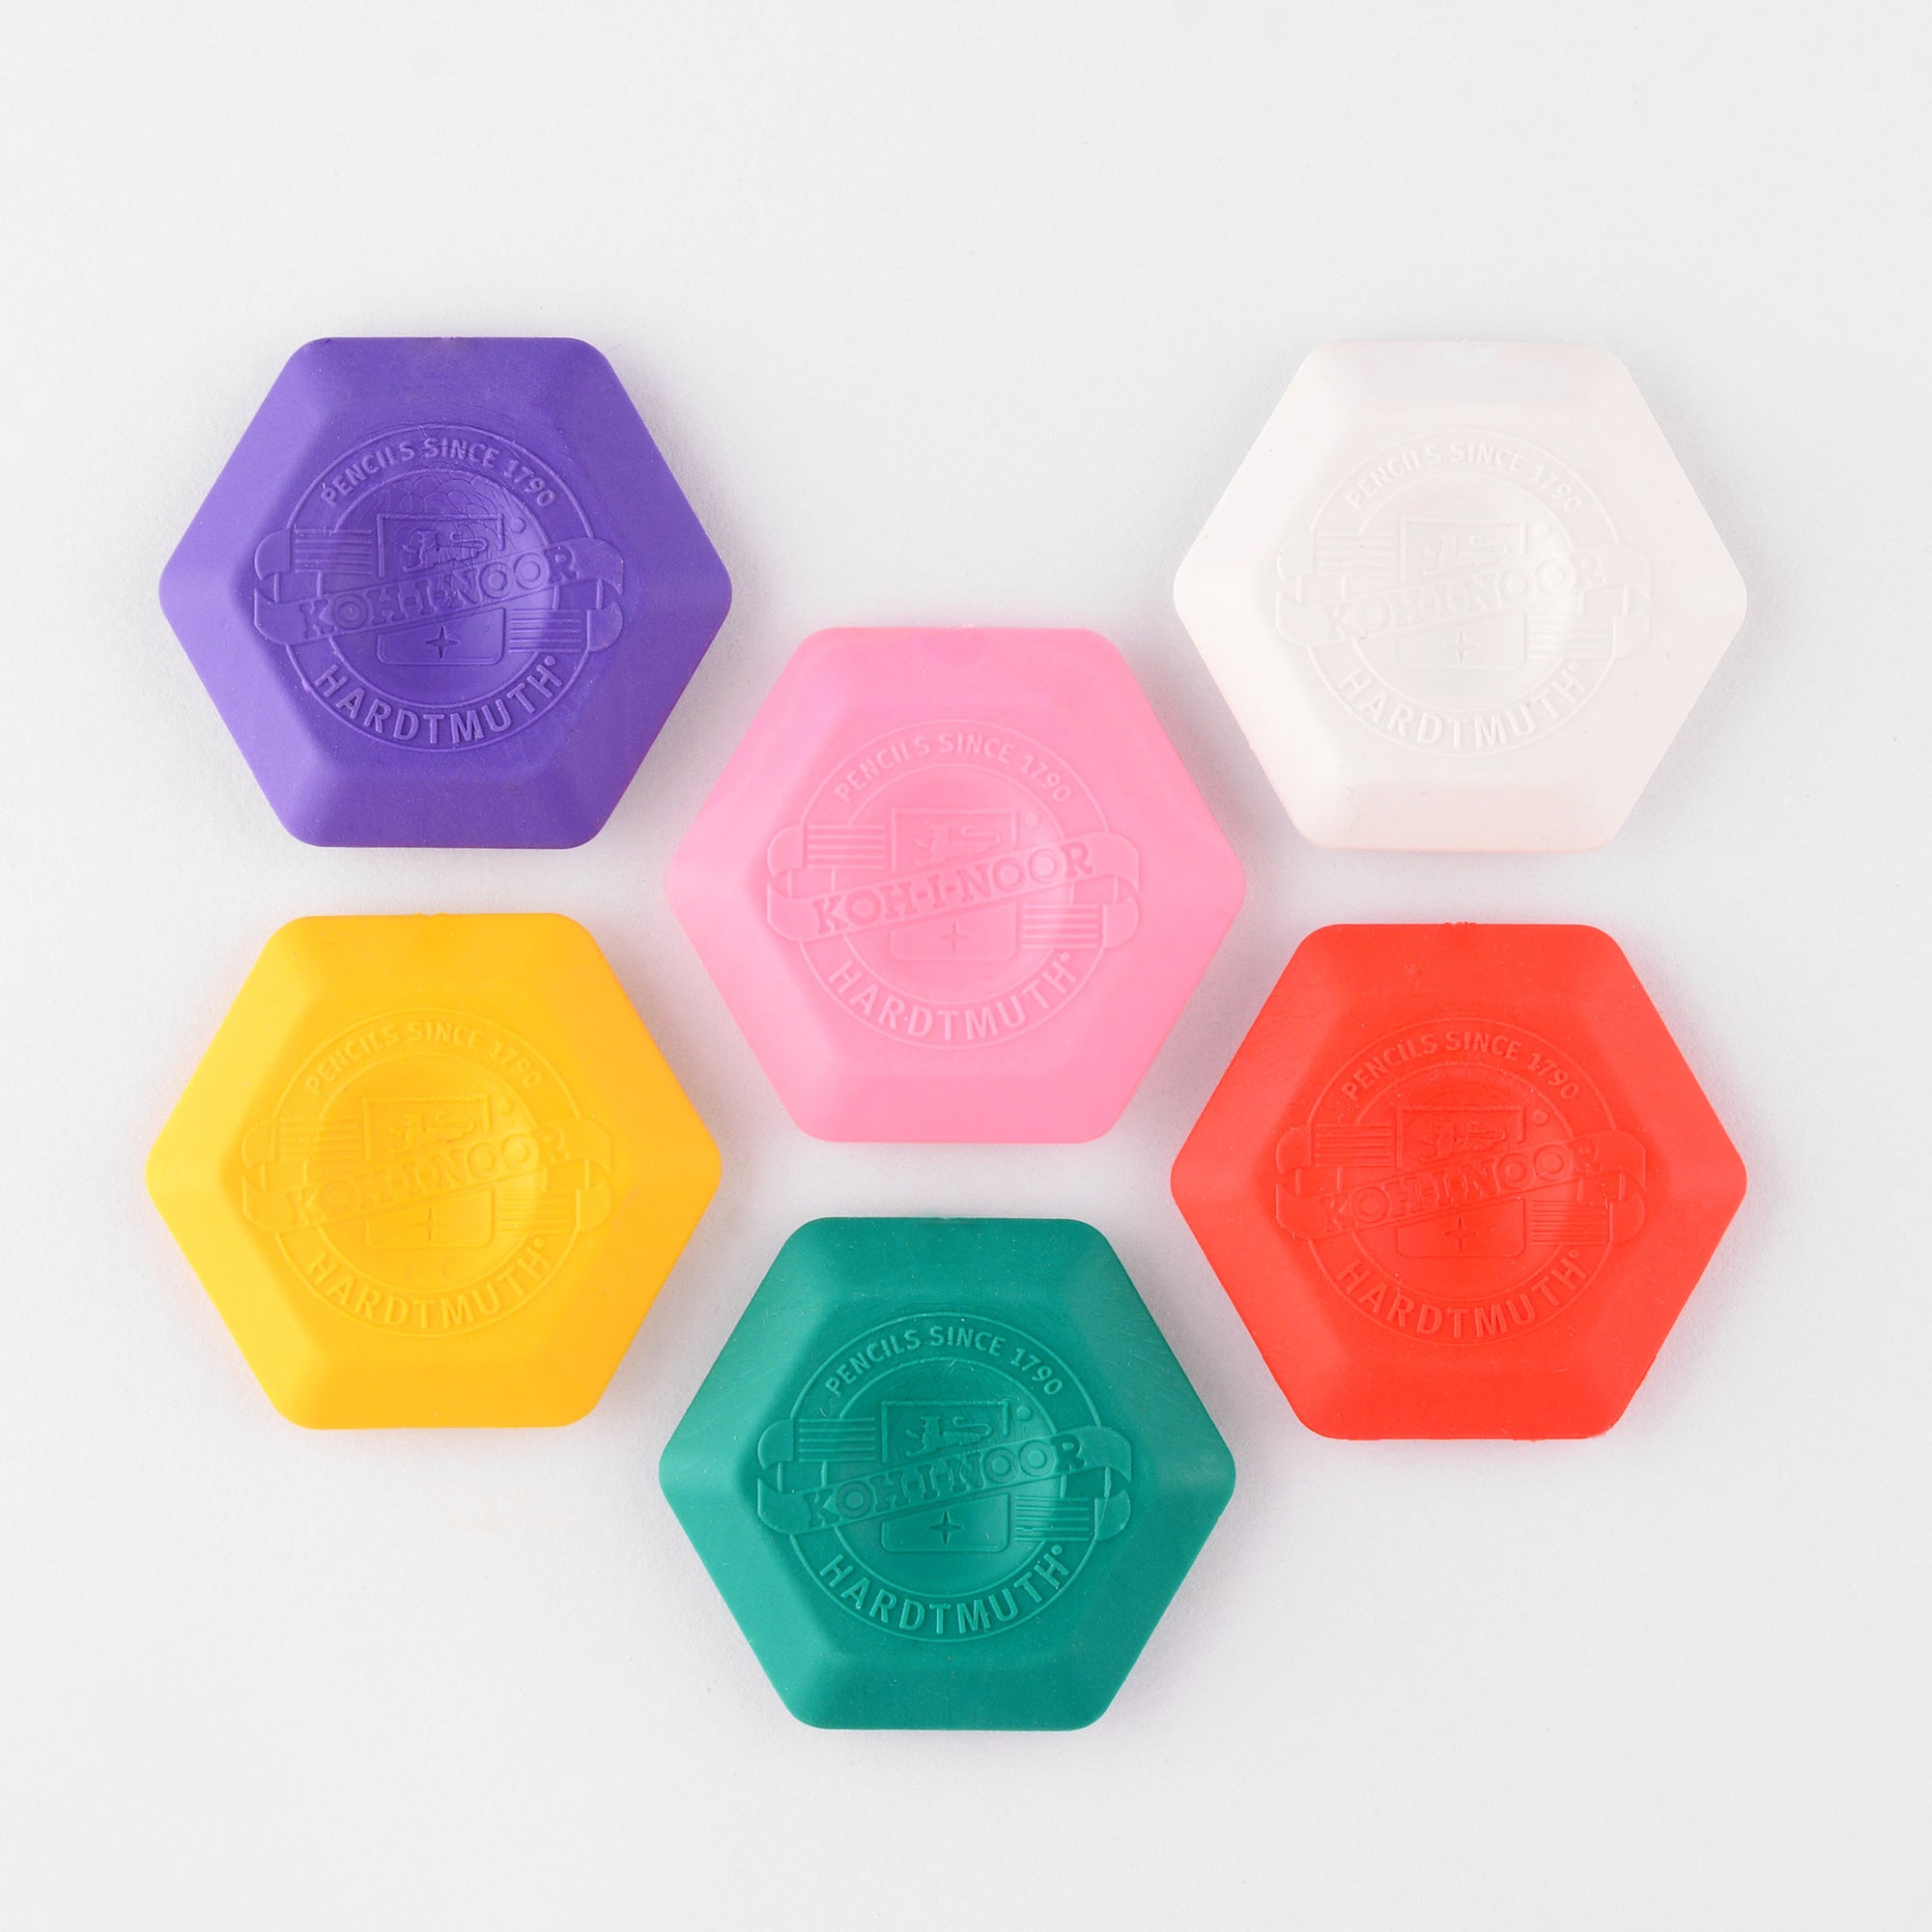 Koh-I-Noor Hexagon Thermoplastic Eraser 